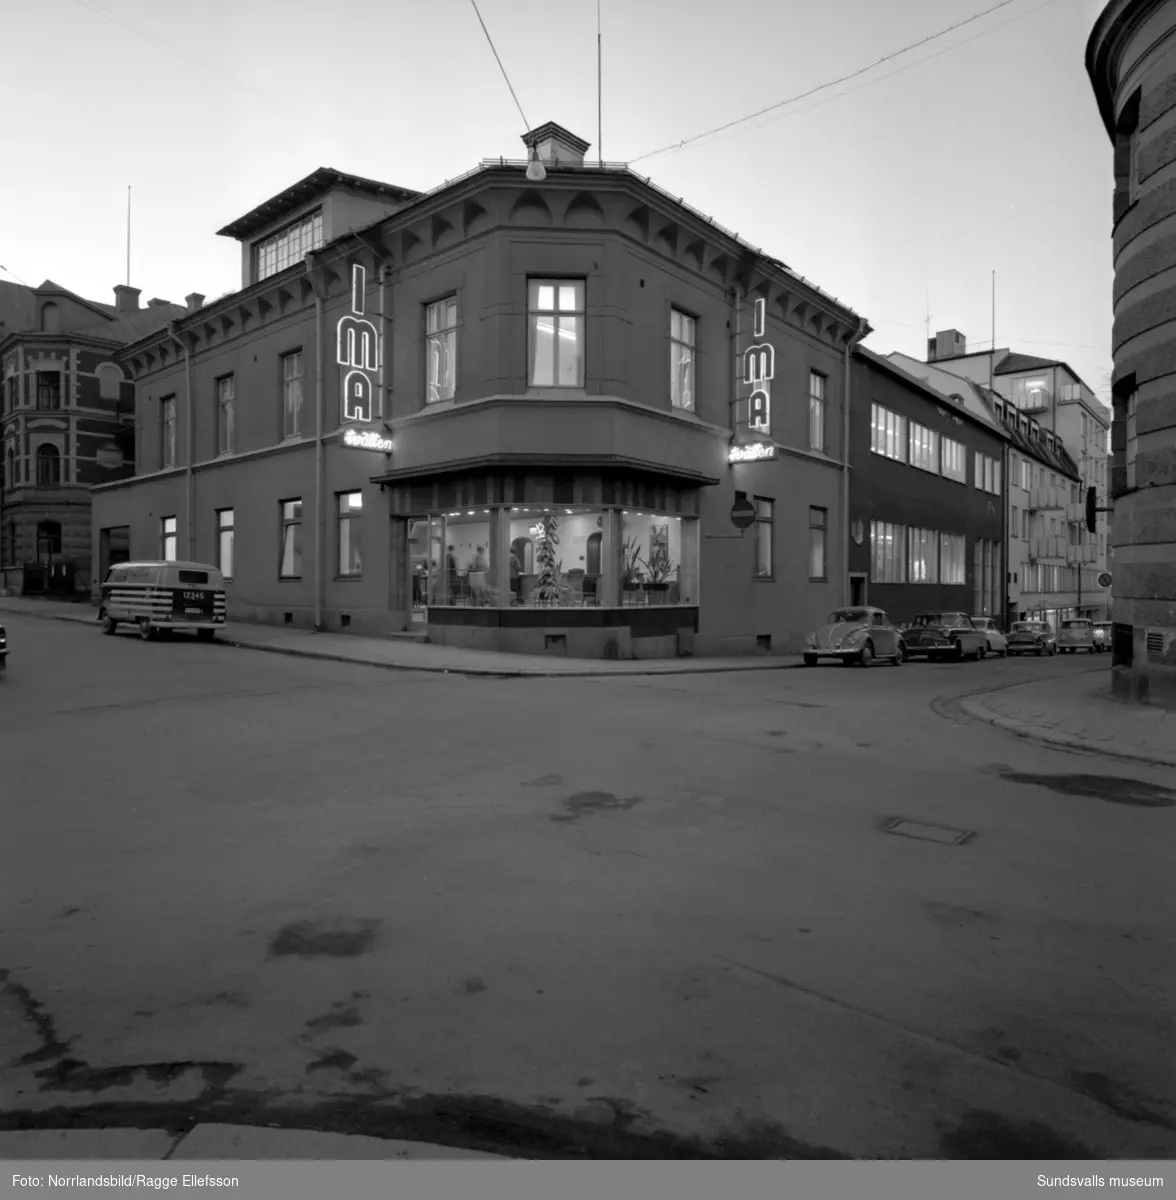 IMA-tvätten, Flyréns,  i Sundsvall vid Kyrkogatan 30 är en anrik tvättinrättning som huserat på samma plats sedan 1943. Interiörbilder med full verksamhet i lokalerna.